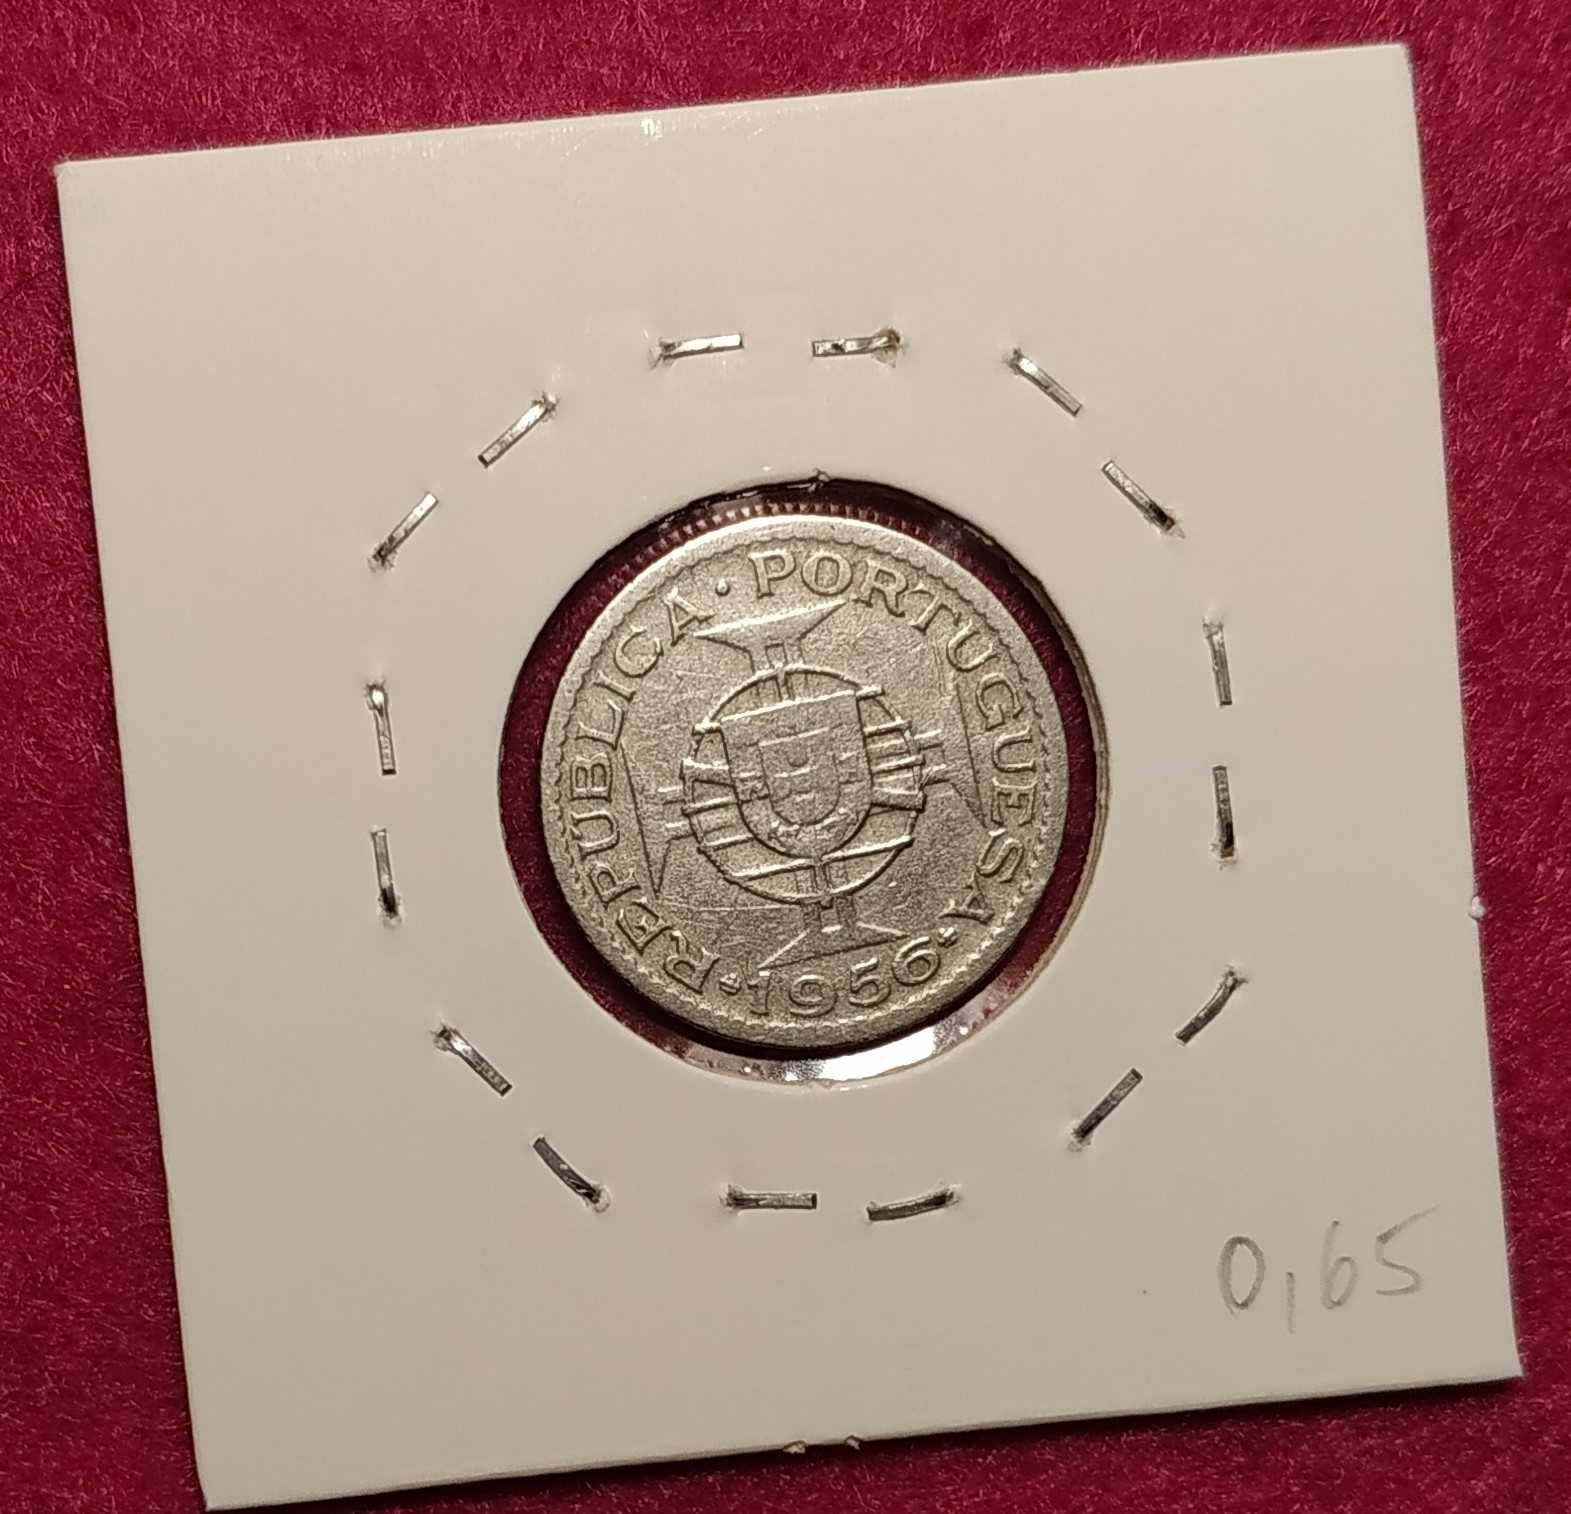 Angola - moeda de 2,5 escudos de 1956